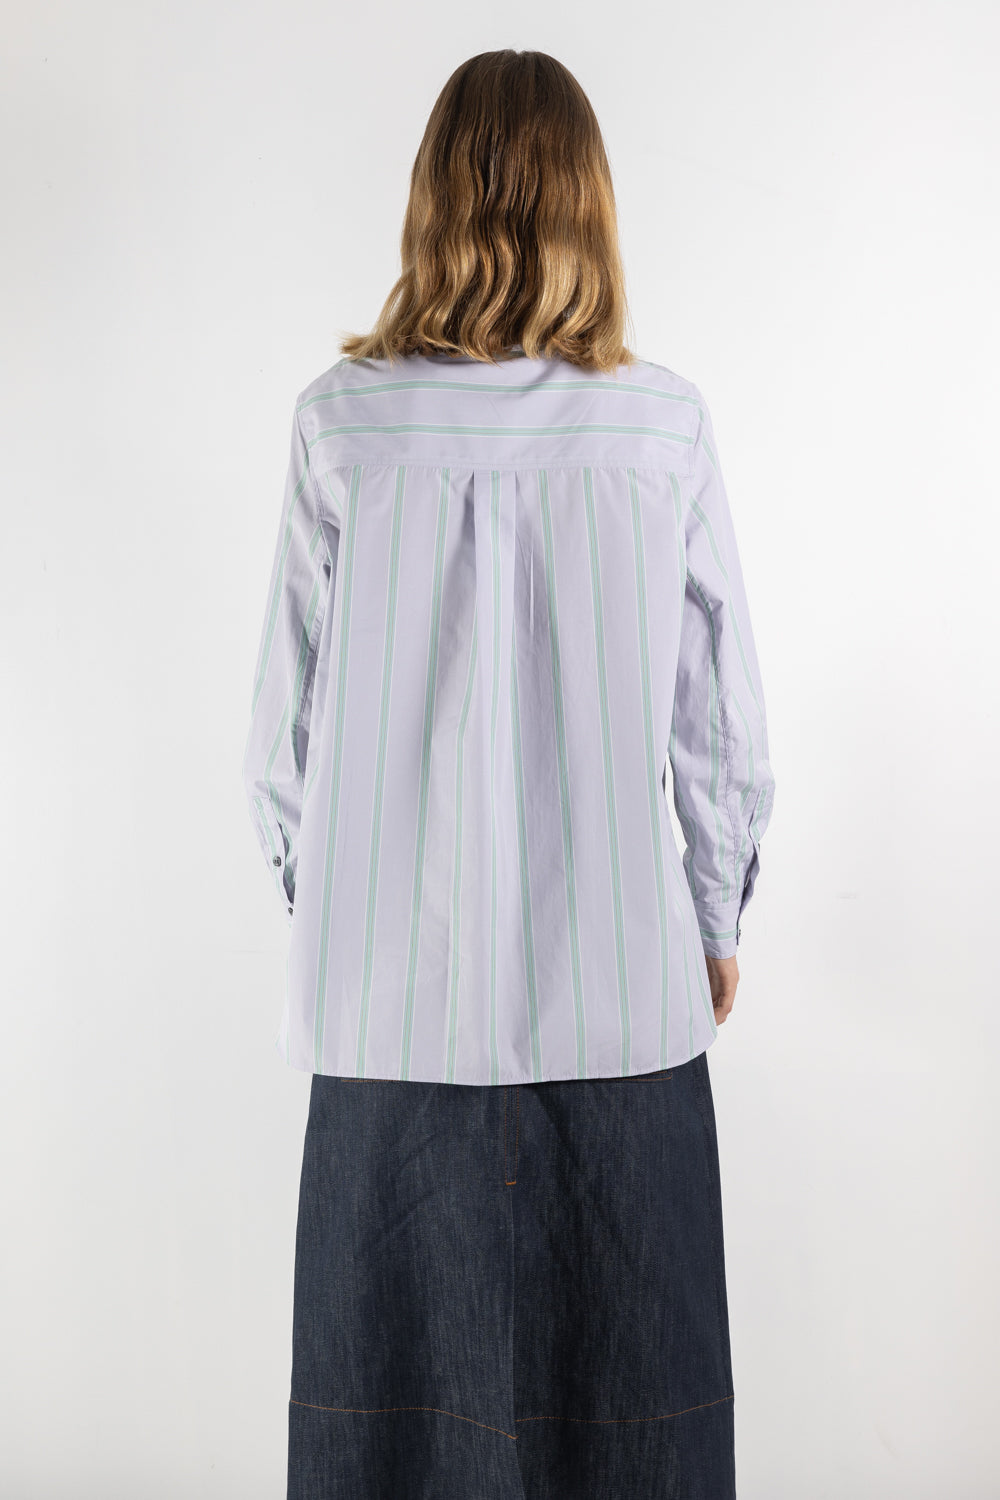 Womens Shirt | Soeur Thalie Shirt | The Standard Store